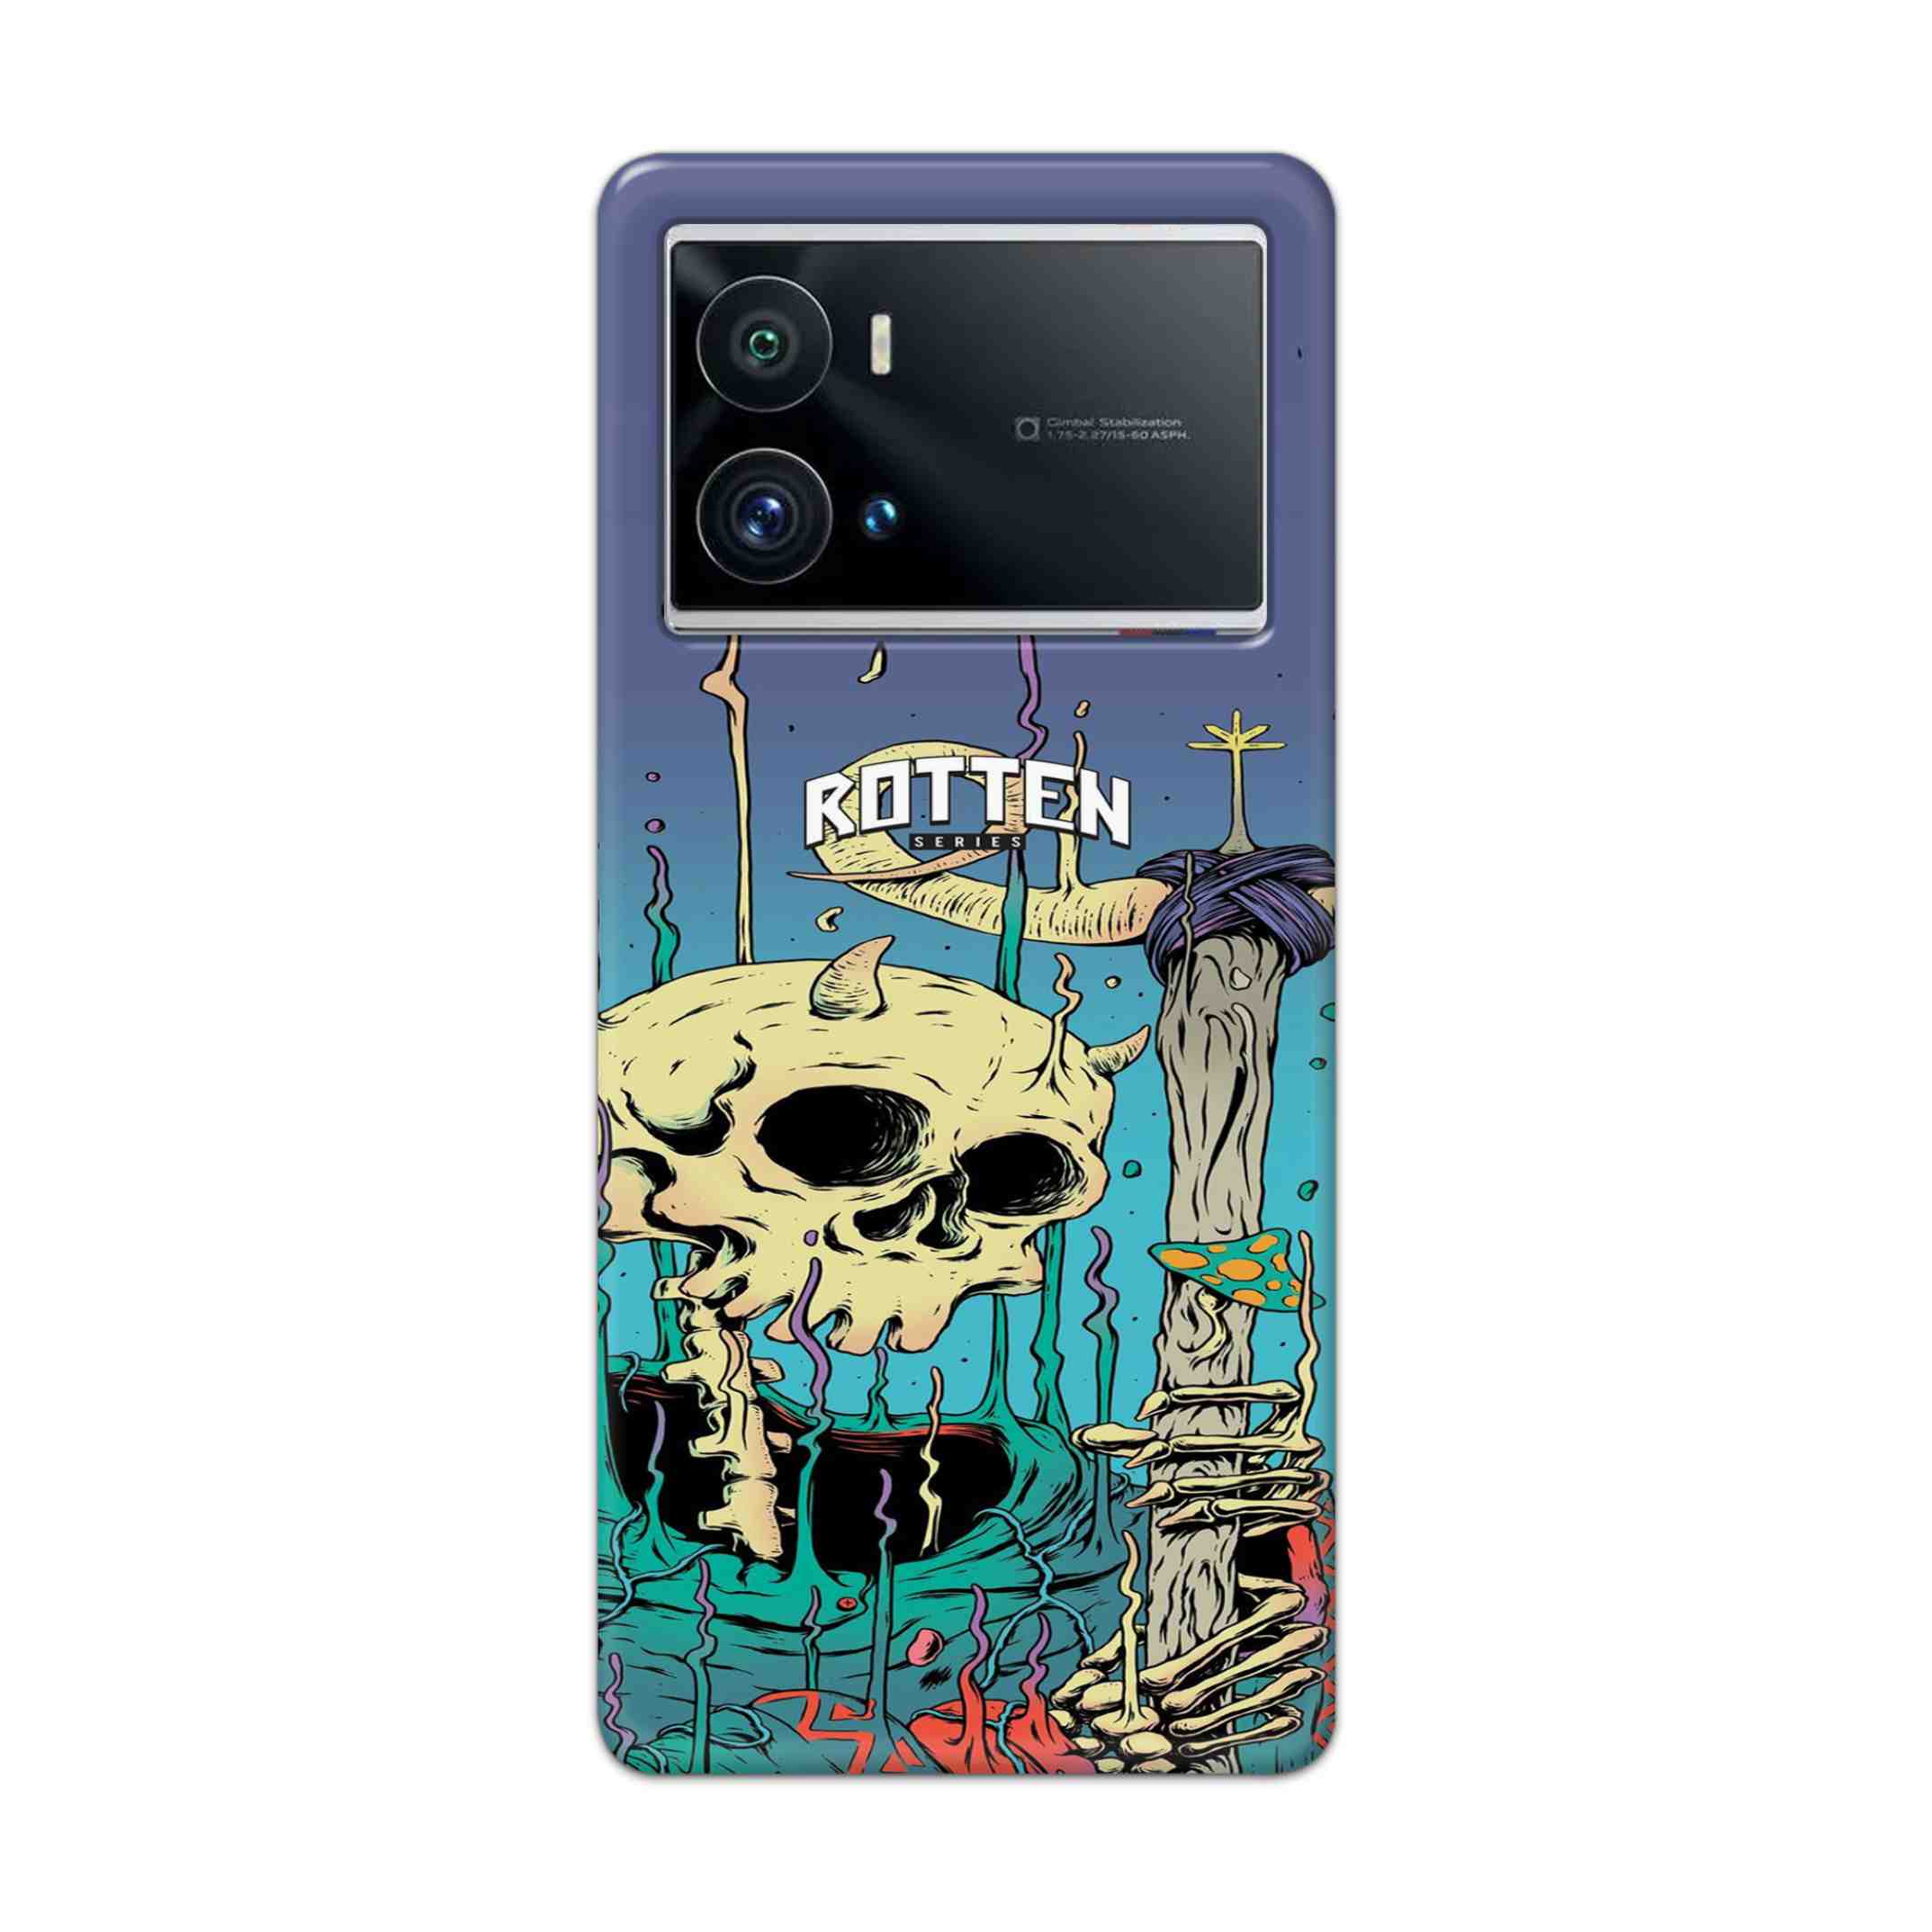 Buy Skull Hard Back Mobile Phone Case Cover For iQOO 9 Pro 5G Online